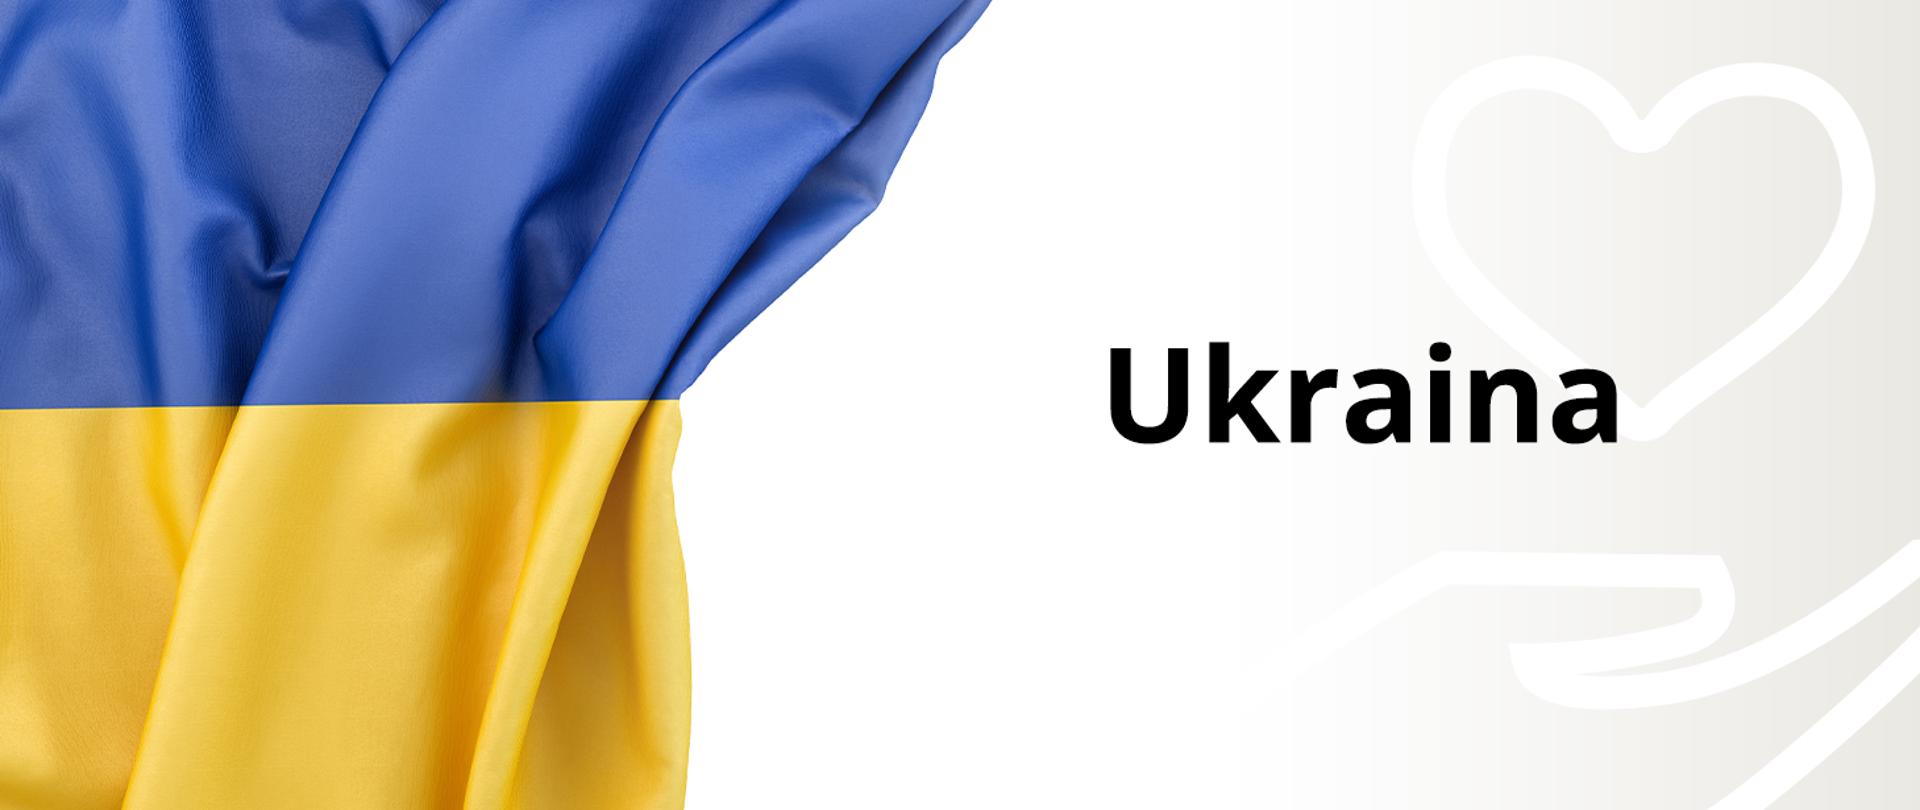 zdjęcie przedstawia po lewej stronie pofalowaną flagę Ukrainy w kolorze niebiesko żółtym, po prawej na beżowym tle z zarysem grafiki serce nad dłonią widoczny czarny napis Ukraina